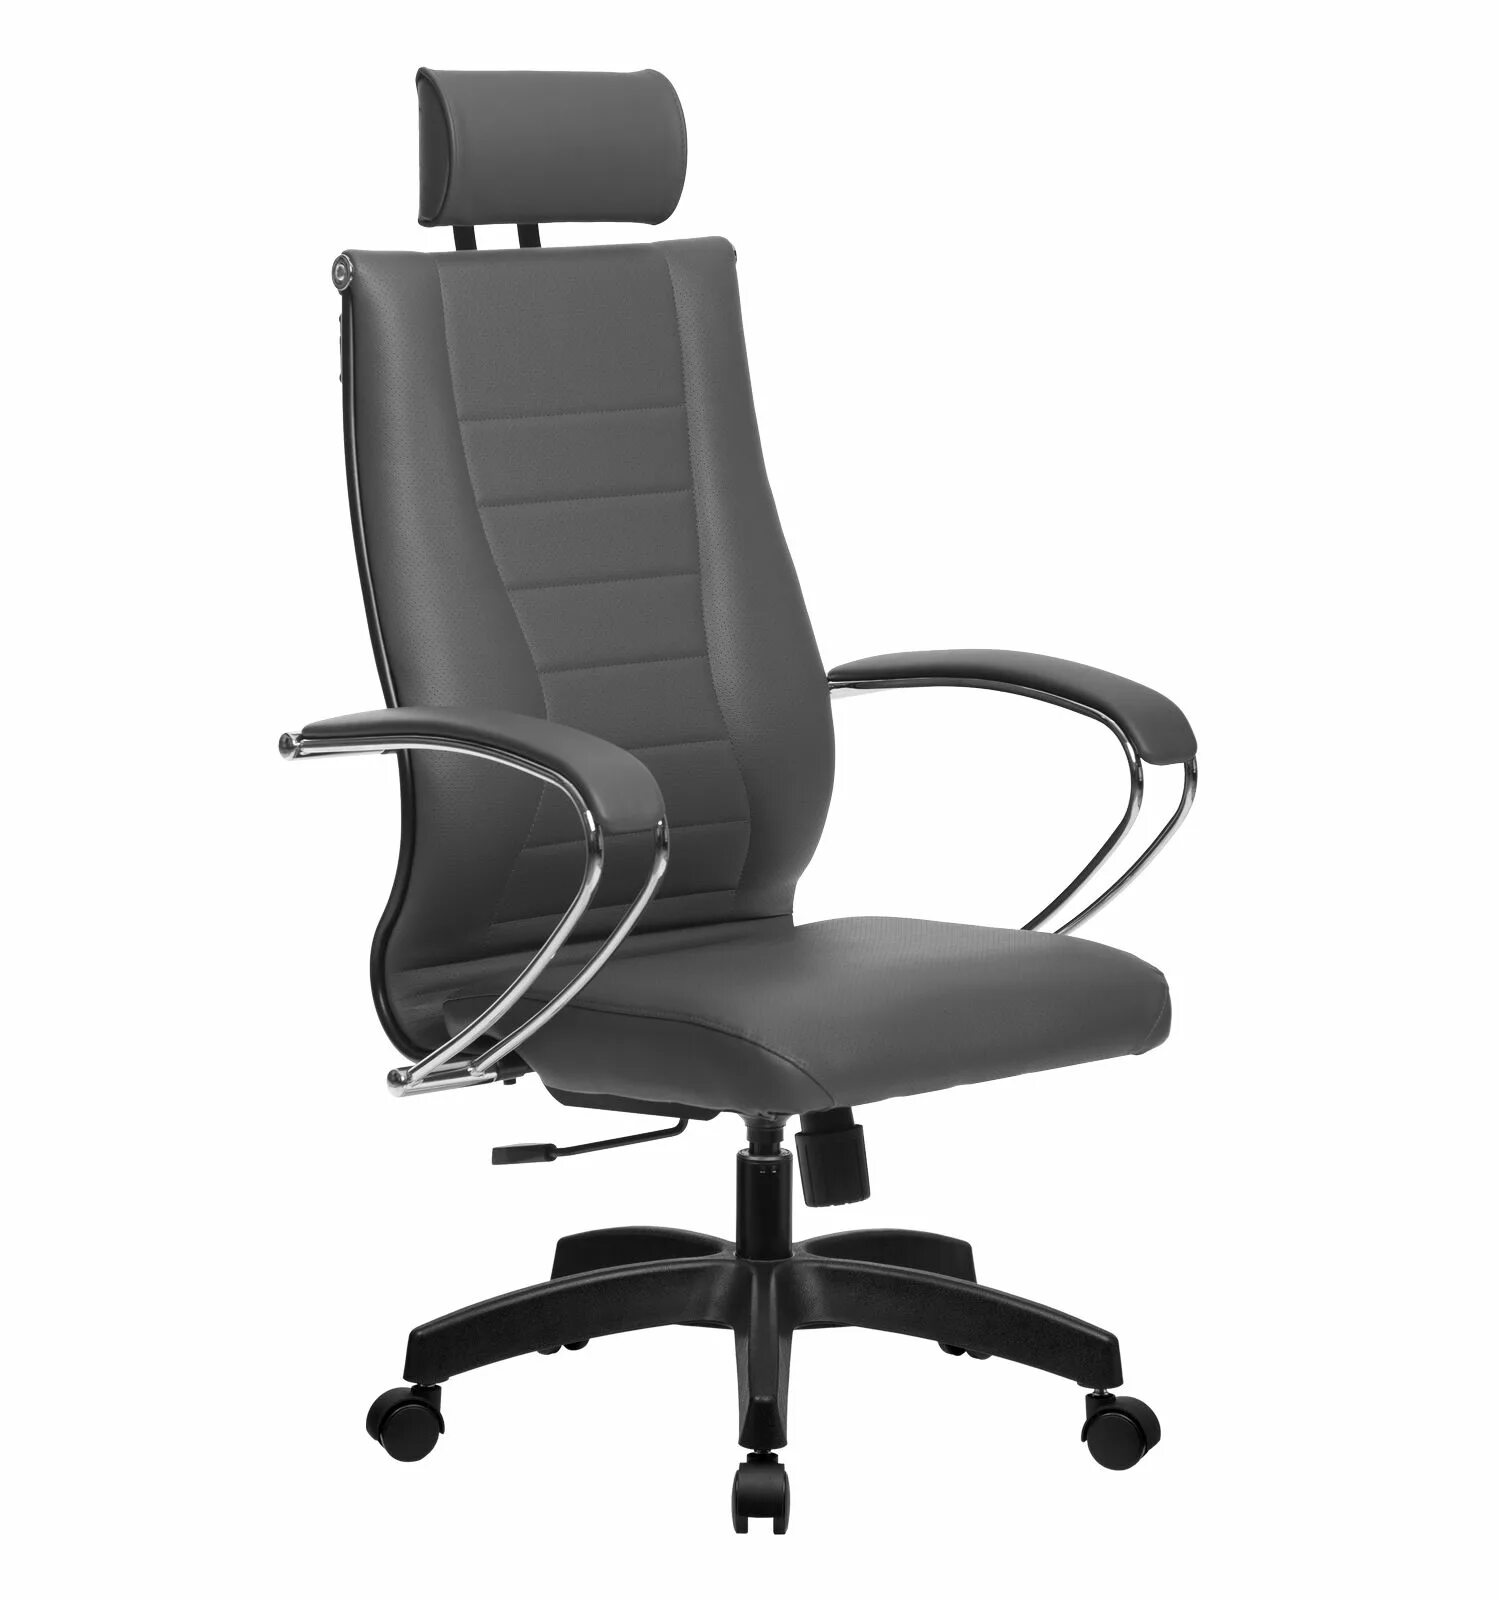 Офисные кресла минске. Кресло офисное BP-1pl. Компьютерное кресло Метта BP-8 pl. Кресло Метта BP-8 pl чёрный. Кресло офисное Metta BK-10ch.